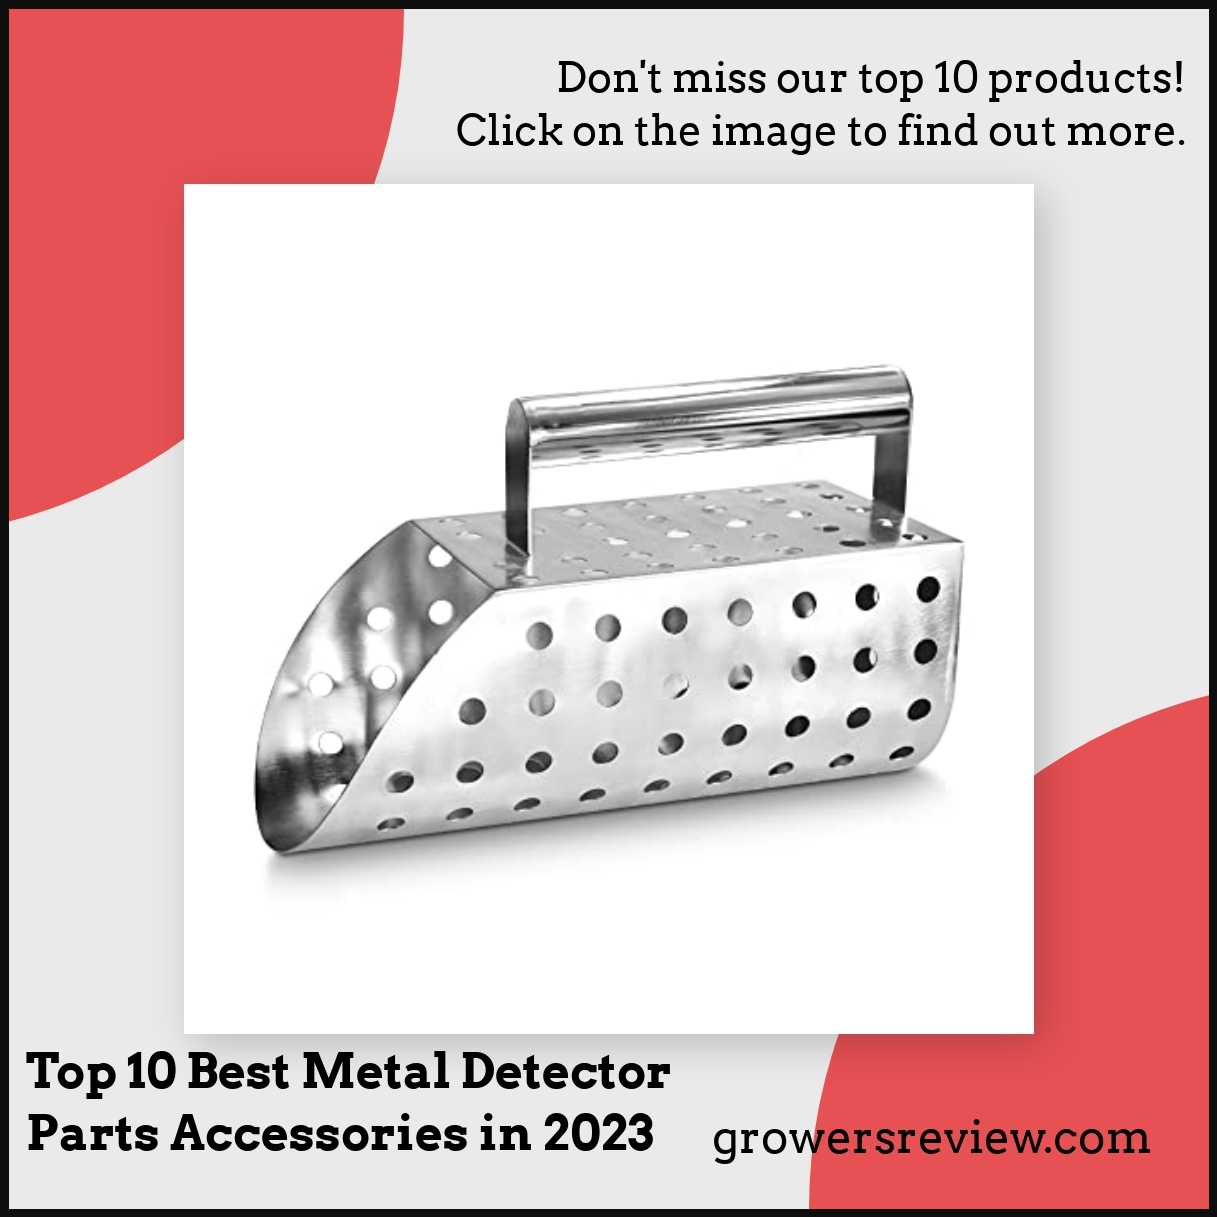 Top 10 Best Metal Detector Parts Accessories in 2023